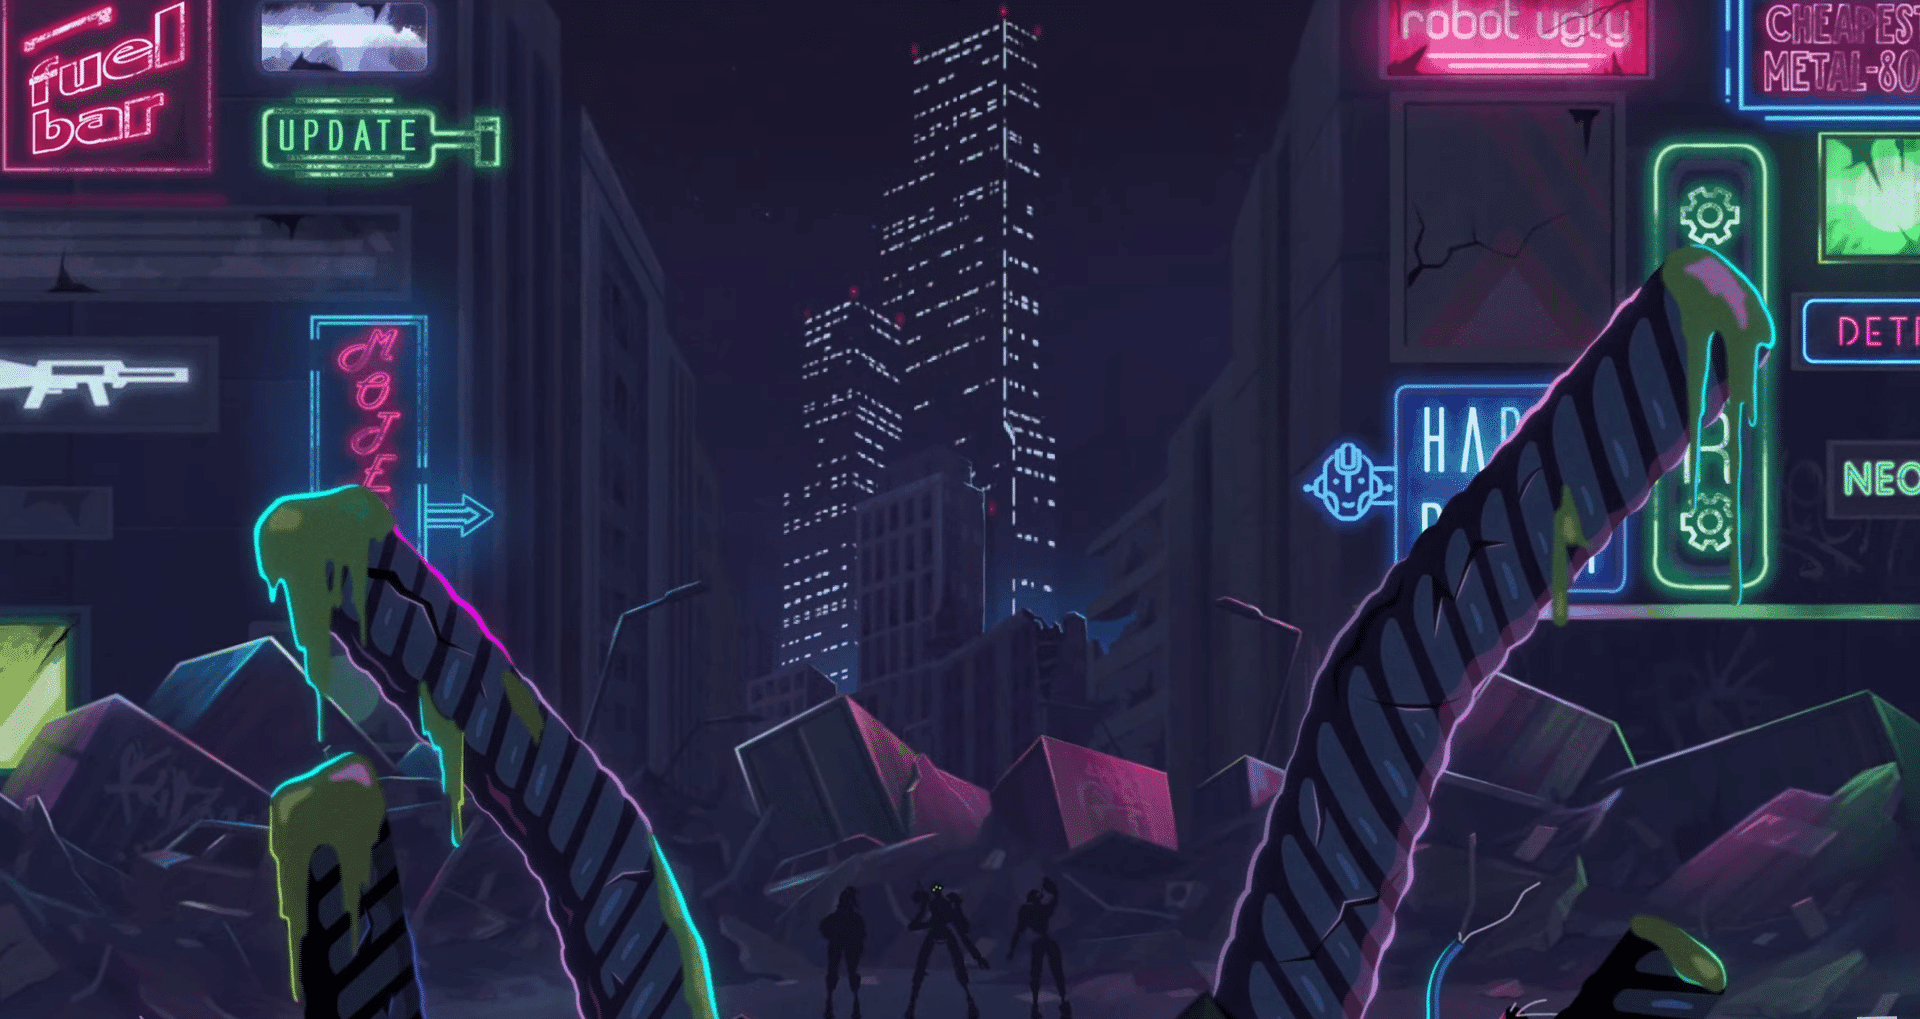 Drunk Robots, um RPG NFT da rede BNB, mergulha os jogadores na cidade pós-apocalíptica de Los Machines para uma ação emocionante.